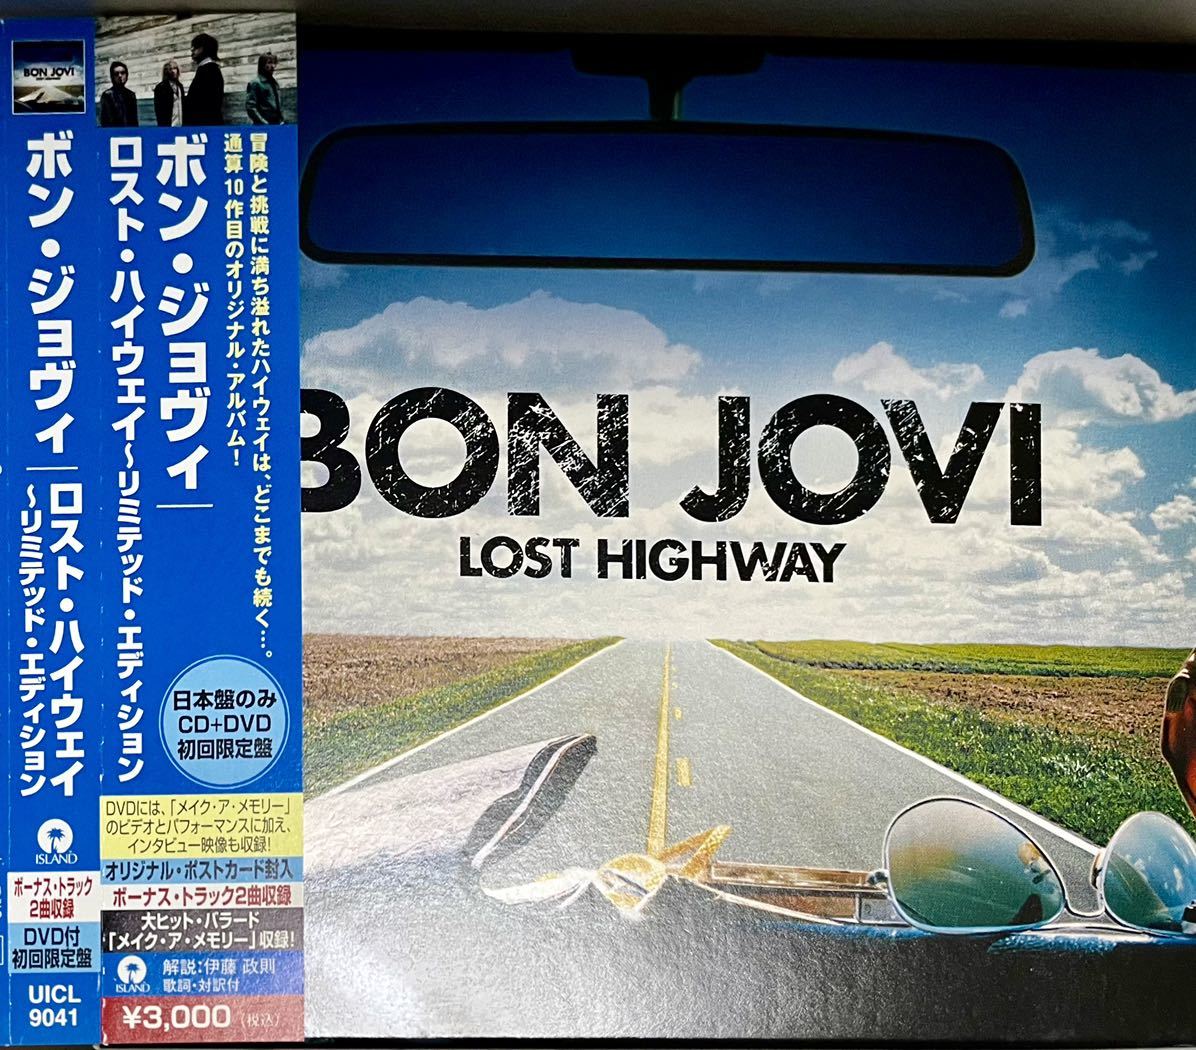 【日本盤CD+DVD初回限定盤】ボン・ジョヴィ/ロスト・ハイウェイ リミテッド盤 帯付◆Bon Jovi/Lost Highway/ボックス仕様/UICL9041/歌詞_画像2